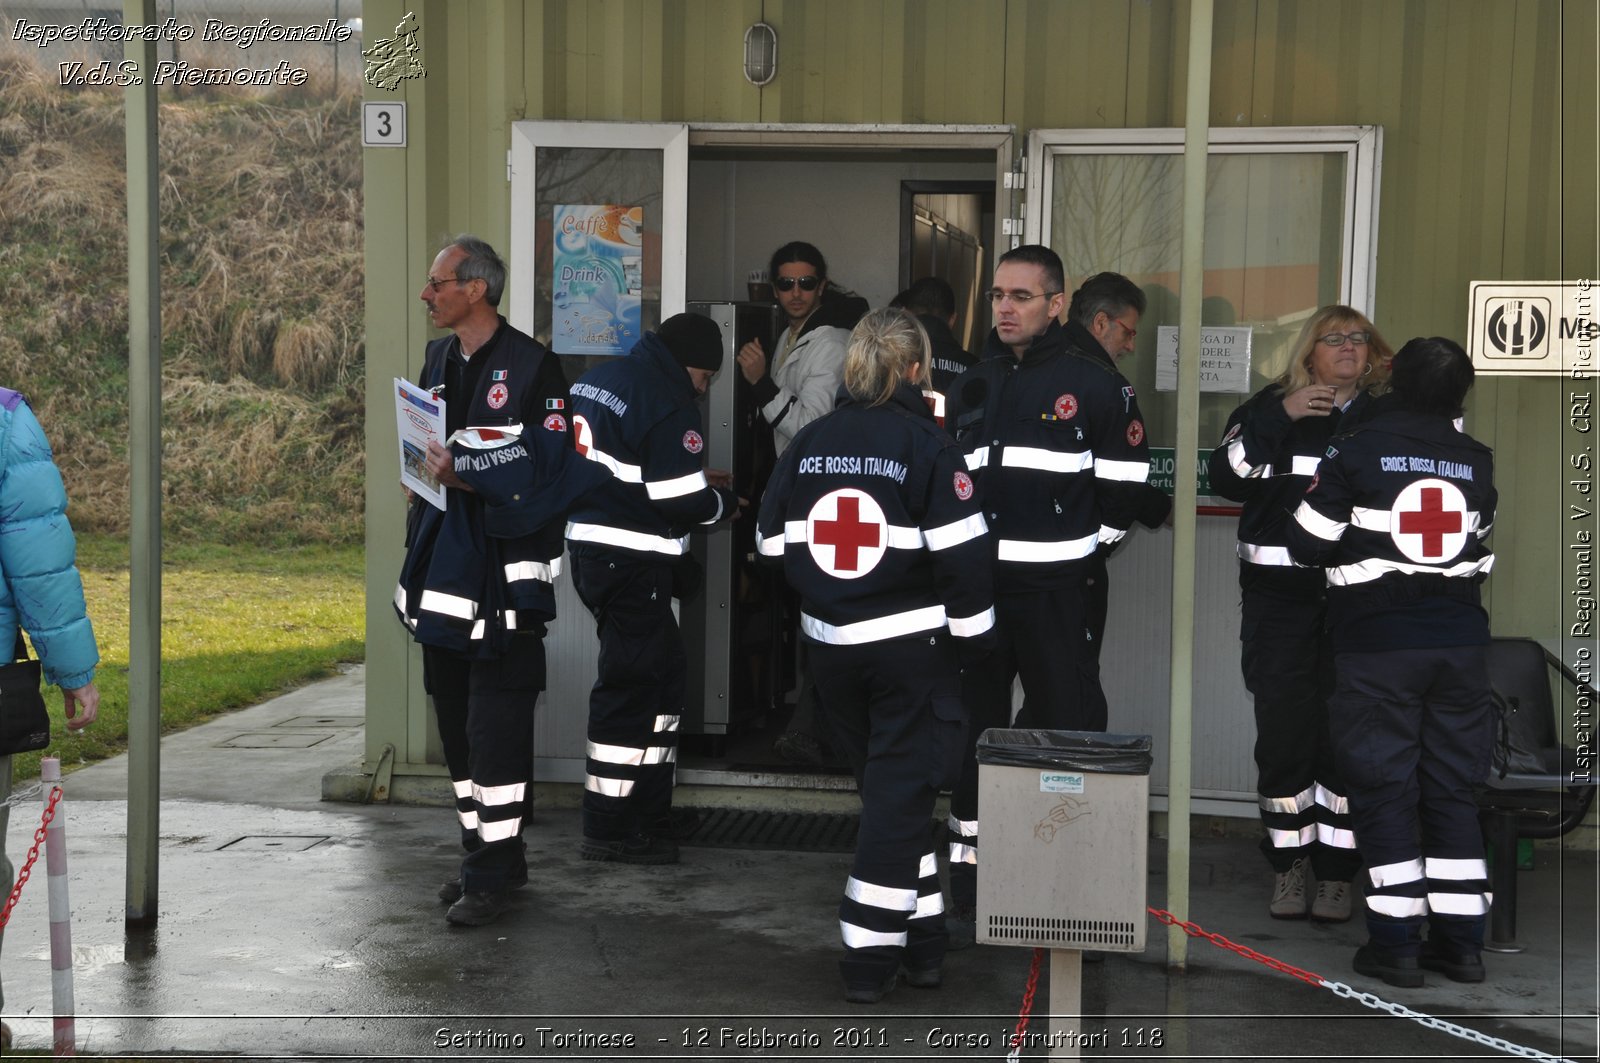 Settimo Torinese  - 12 Febbraio 2011 - Corso istruttori 118 -  Croce Rossa Italiana - Ispettorato Regionale Volontari del Soccorso Piemonte